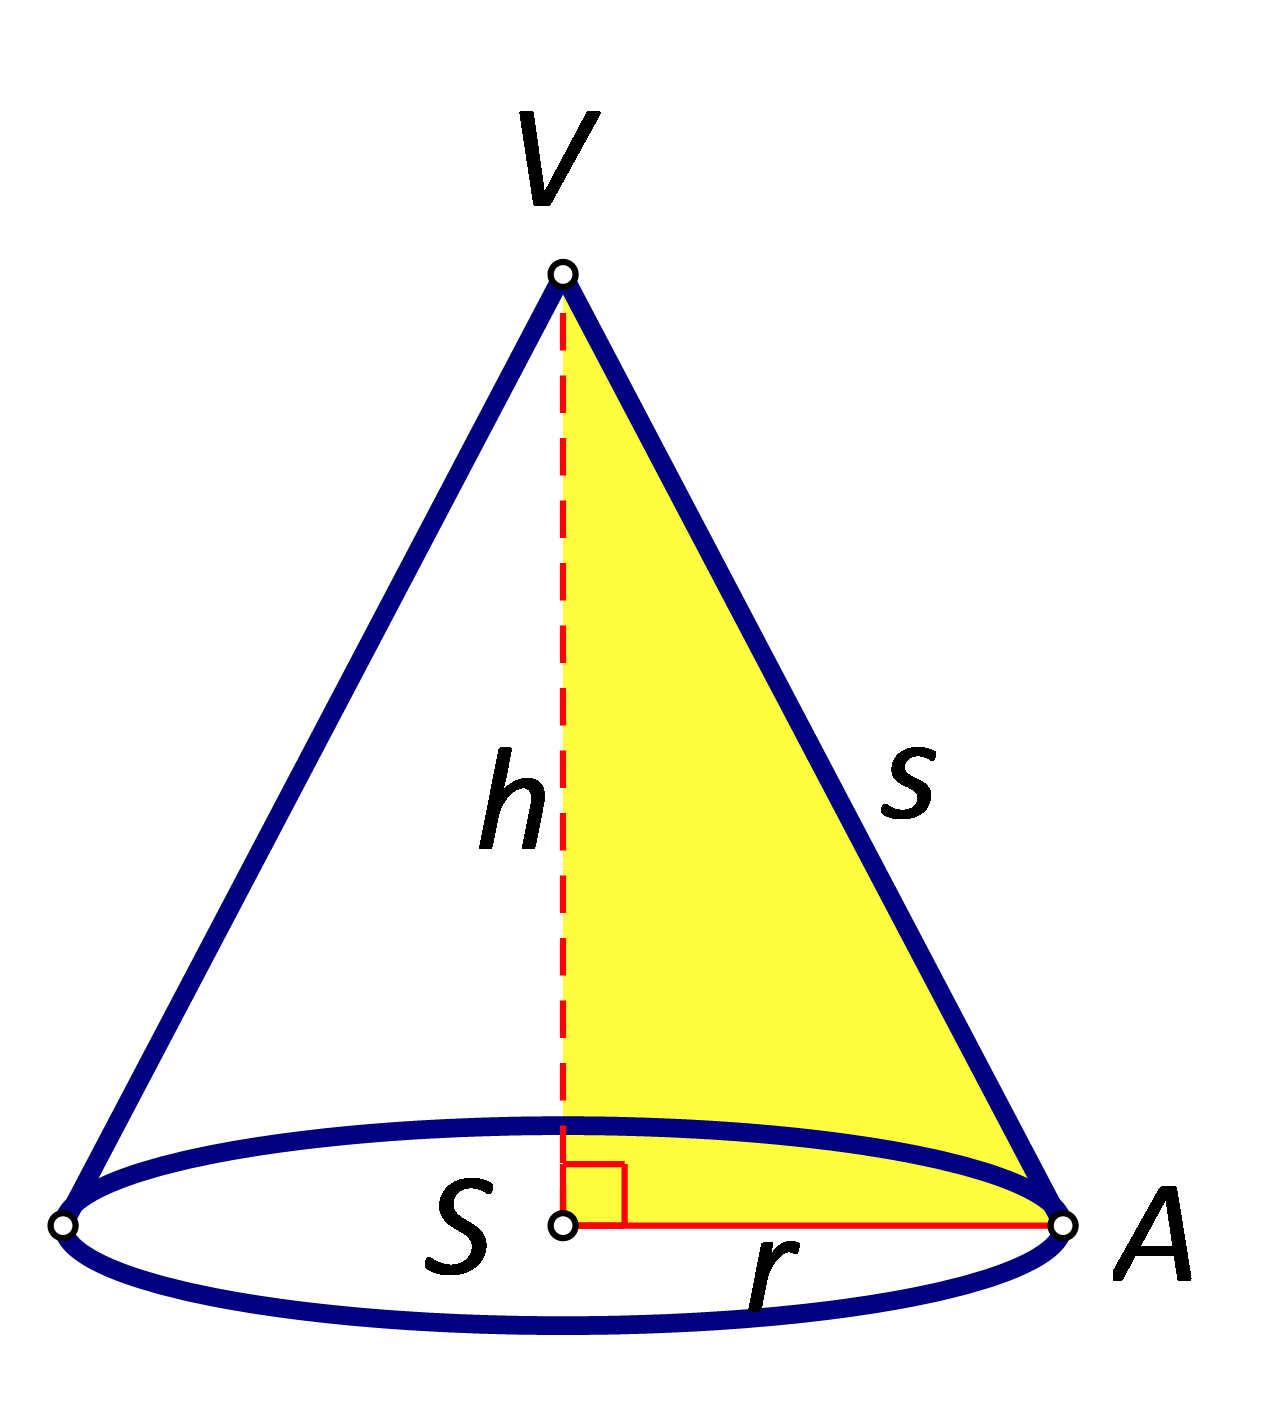 Slika prikazuje pravokutni trokut čija je duljina jedne katete jednaka radijusu stošca, duljina druge katete jednaka visini stošca, a duljina hipotenuze jednaka duljini izvodnice stošca.